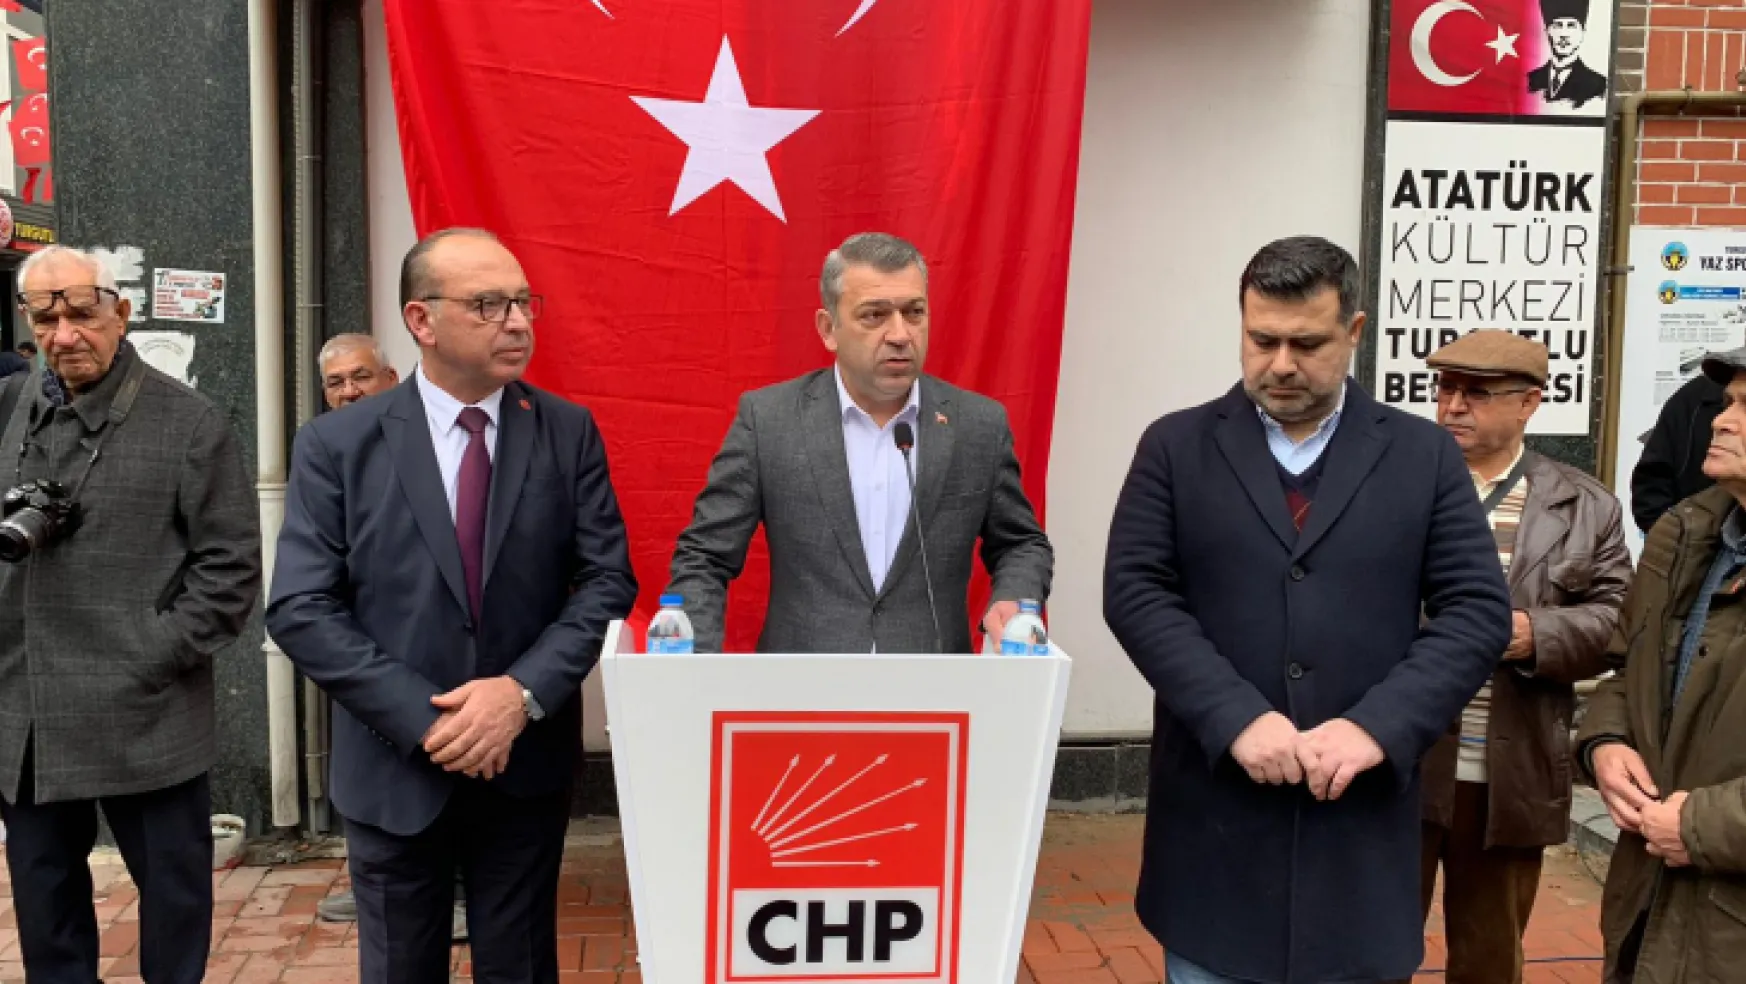 Turgutlu Chp İlçe Teşkilatı Şehitler İçin Basın Açıklaması yaptı: 'Artık Yeter'